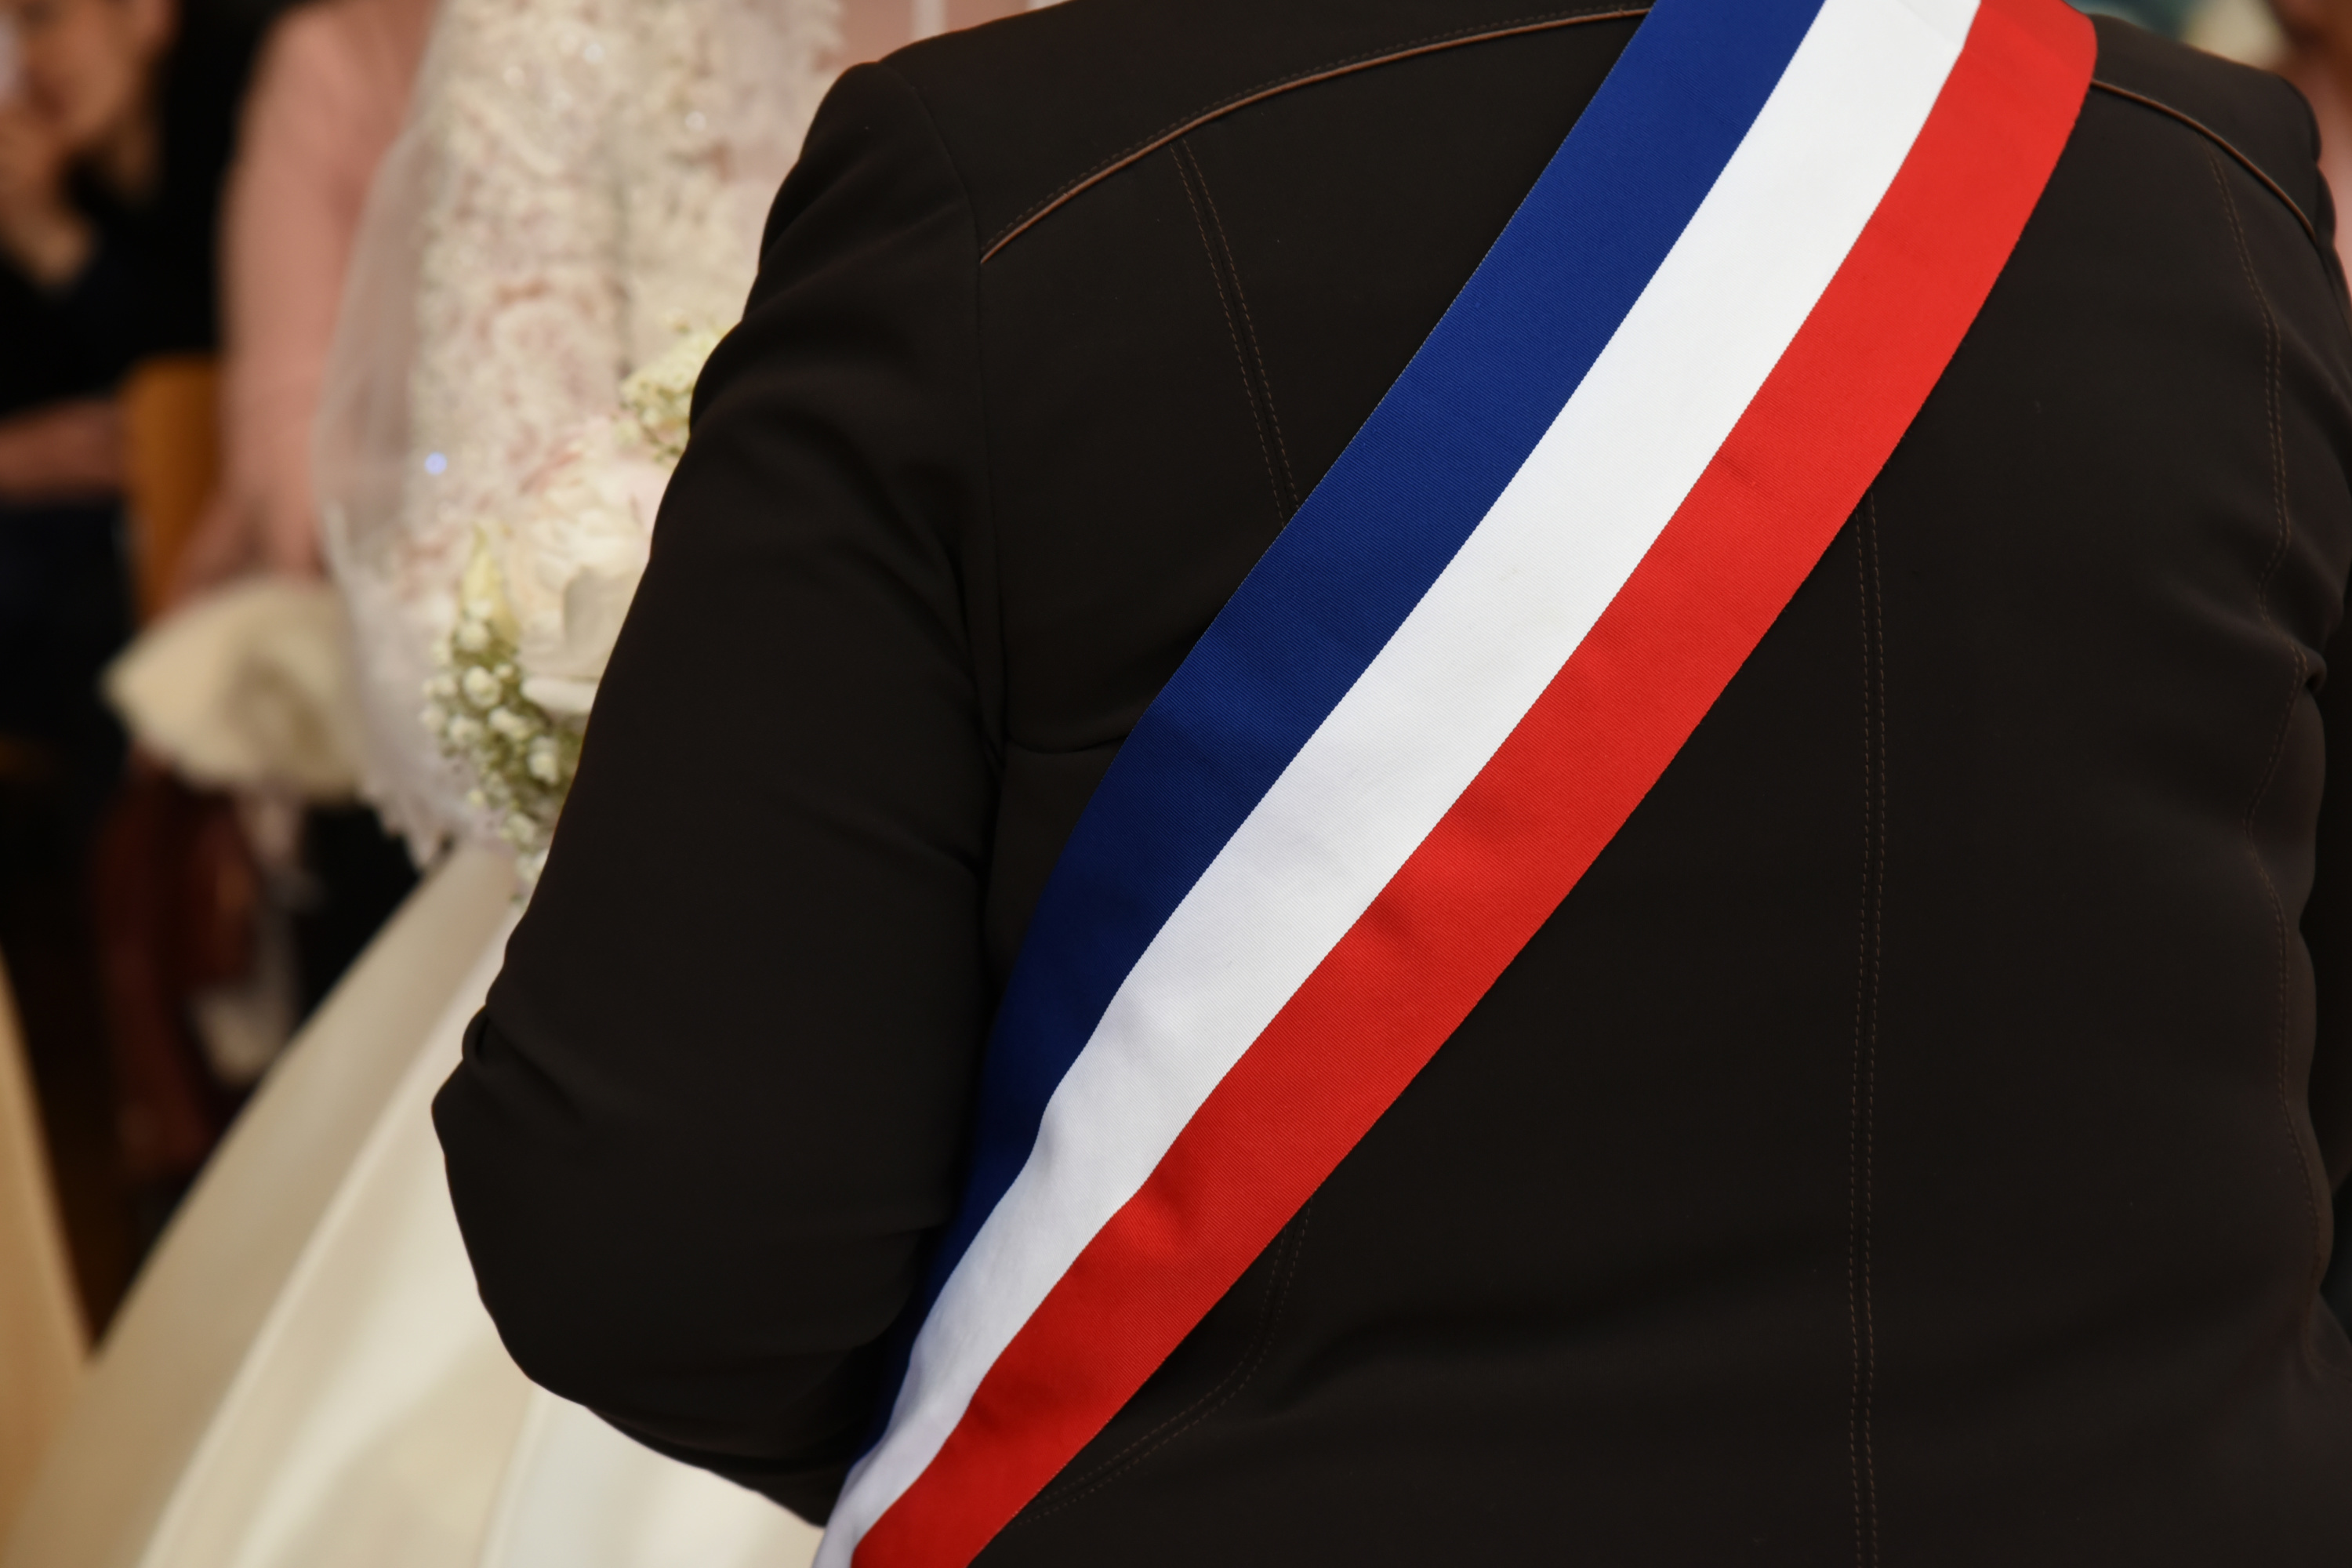 Débordements pendant les mariages : Mantes-la-Jolie va imposer un chèque de caution aux futurs époux